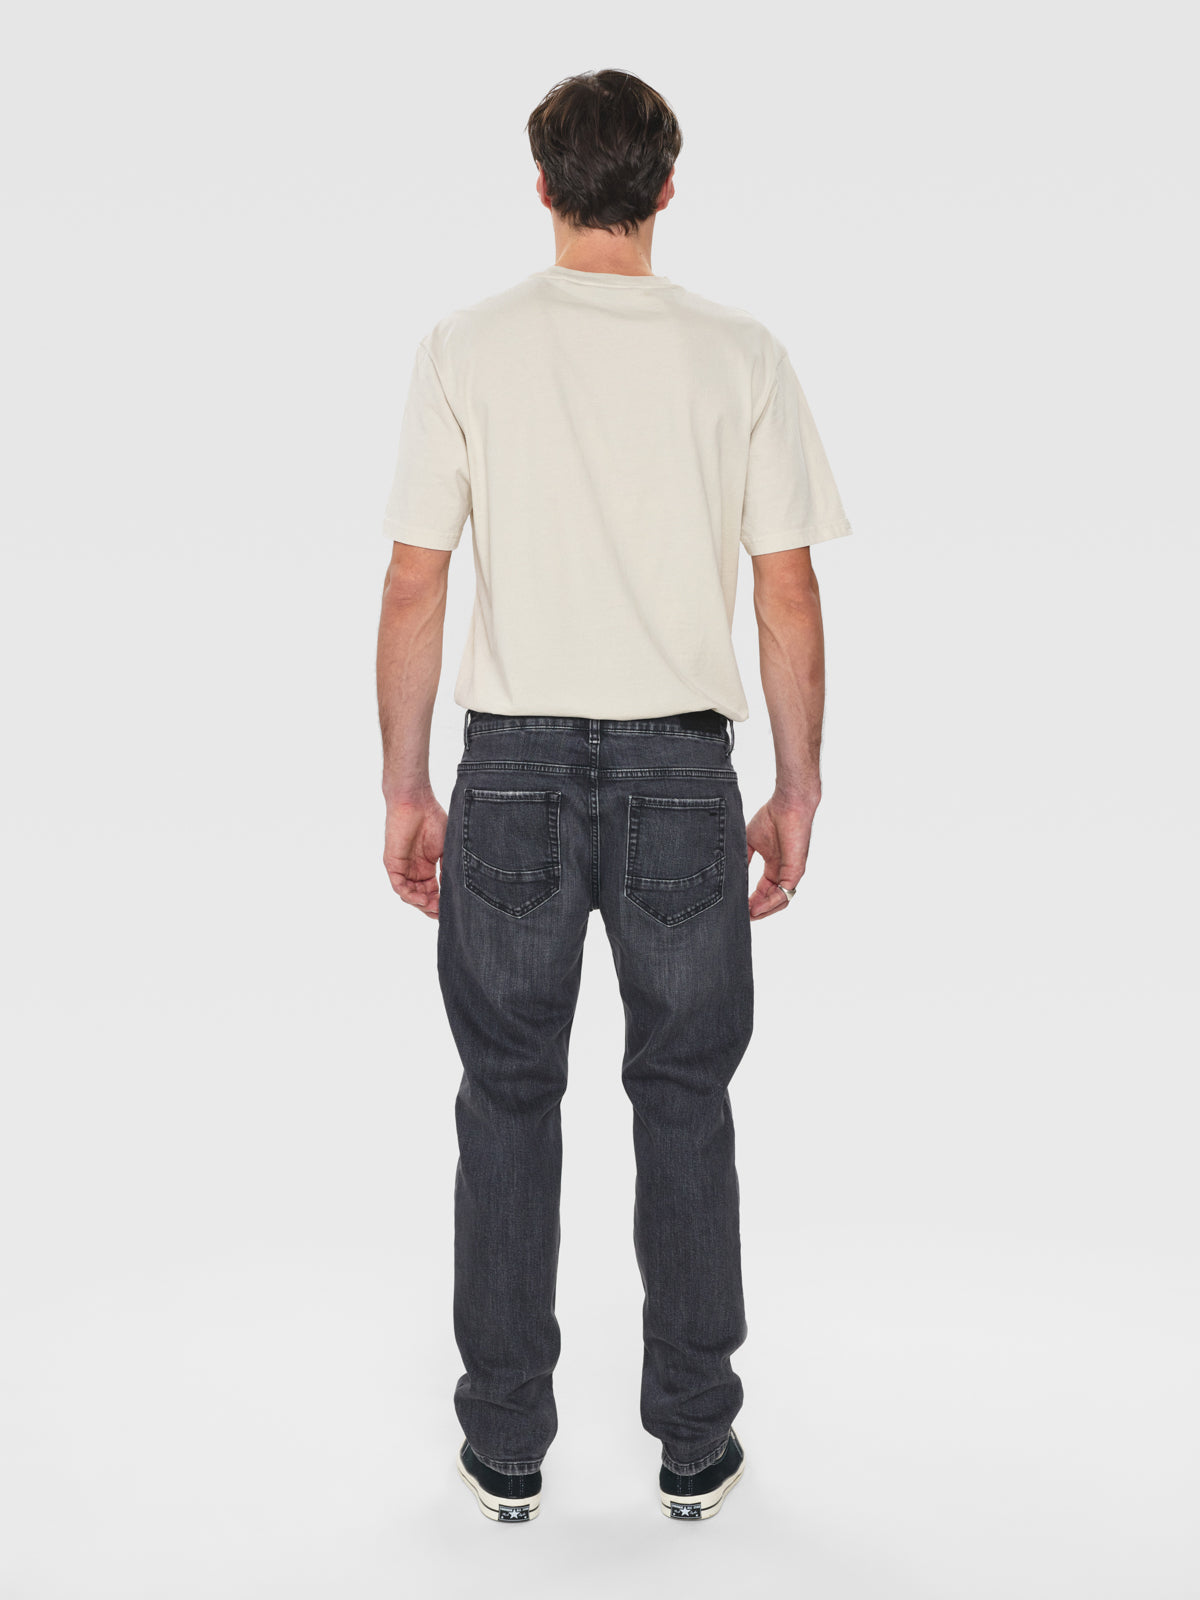 Marc jeans F1011 black denim - Gabba